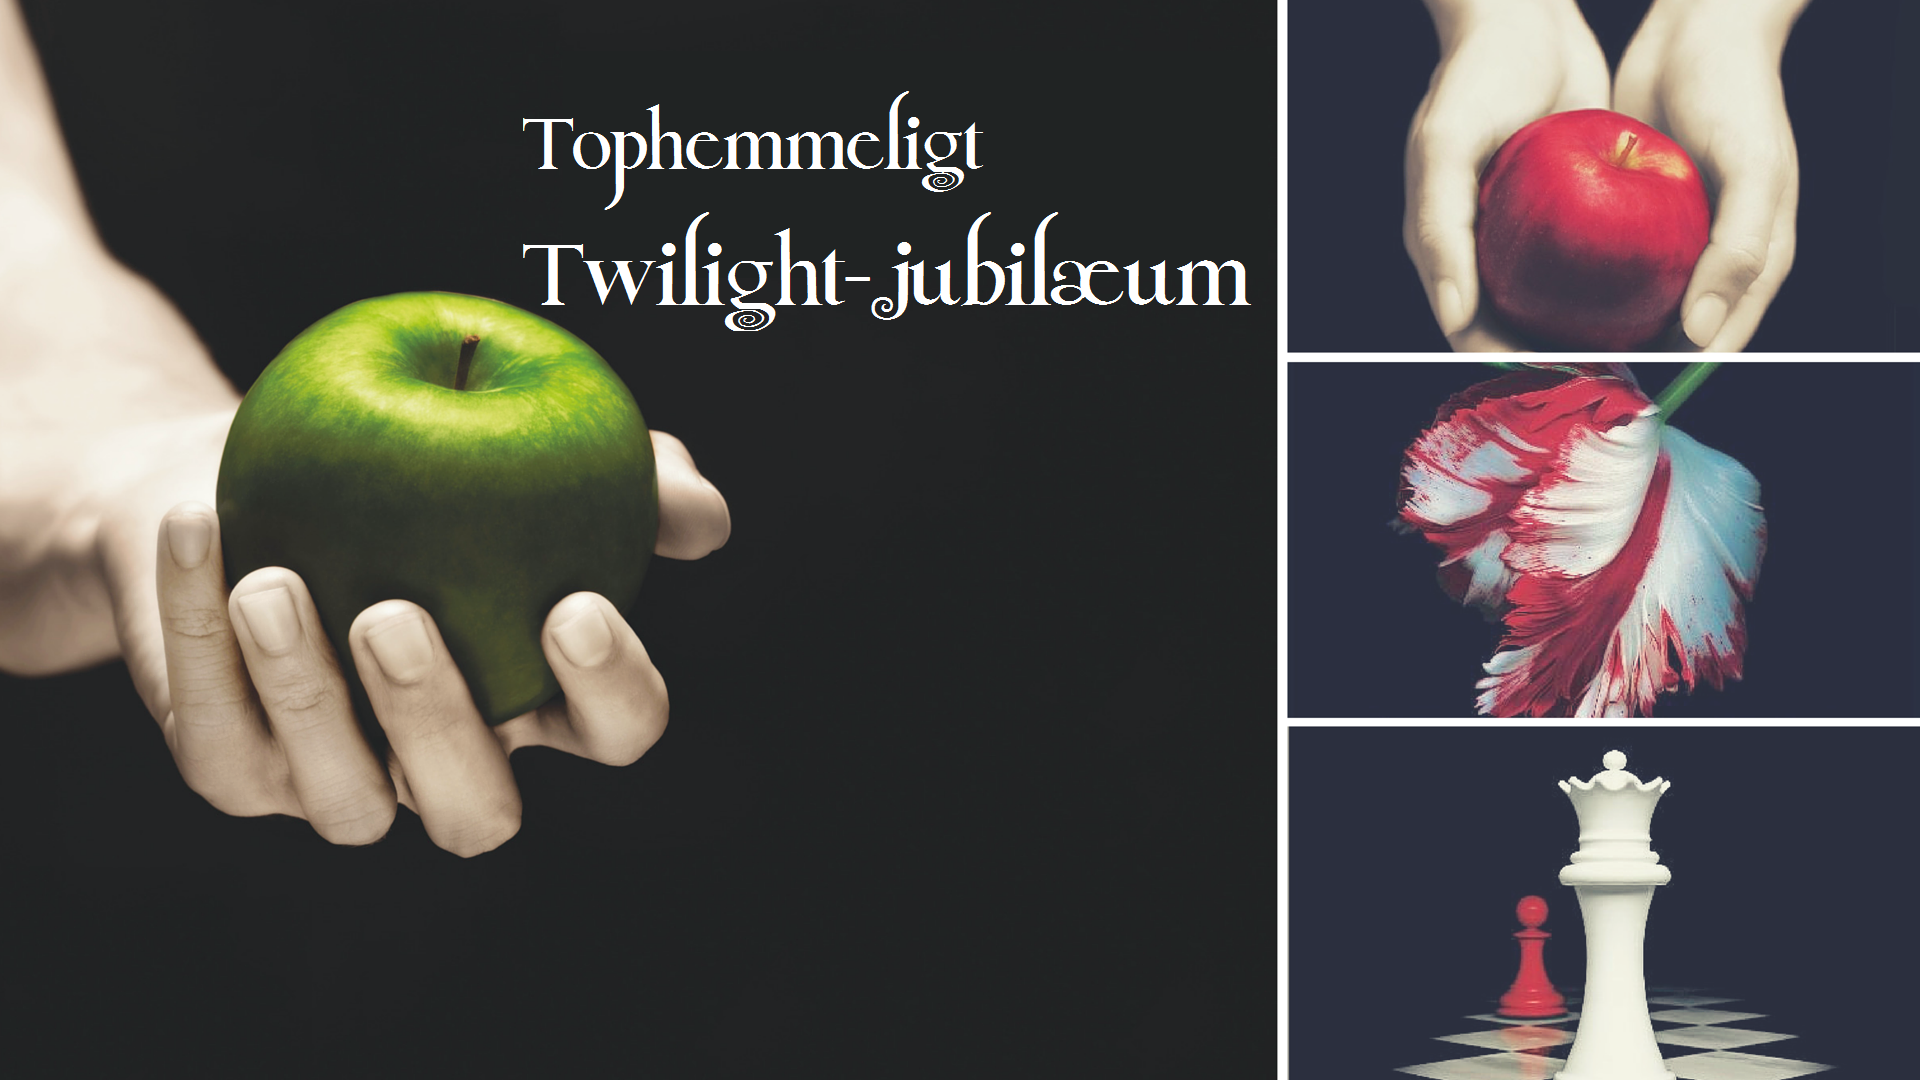 Tophemmeligt Twilight-jubilæum